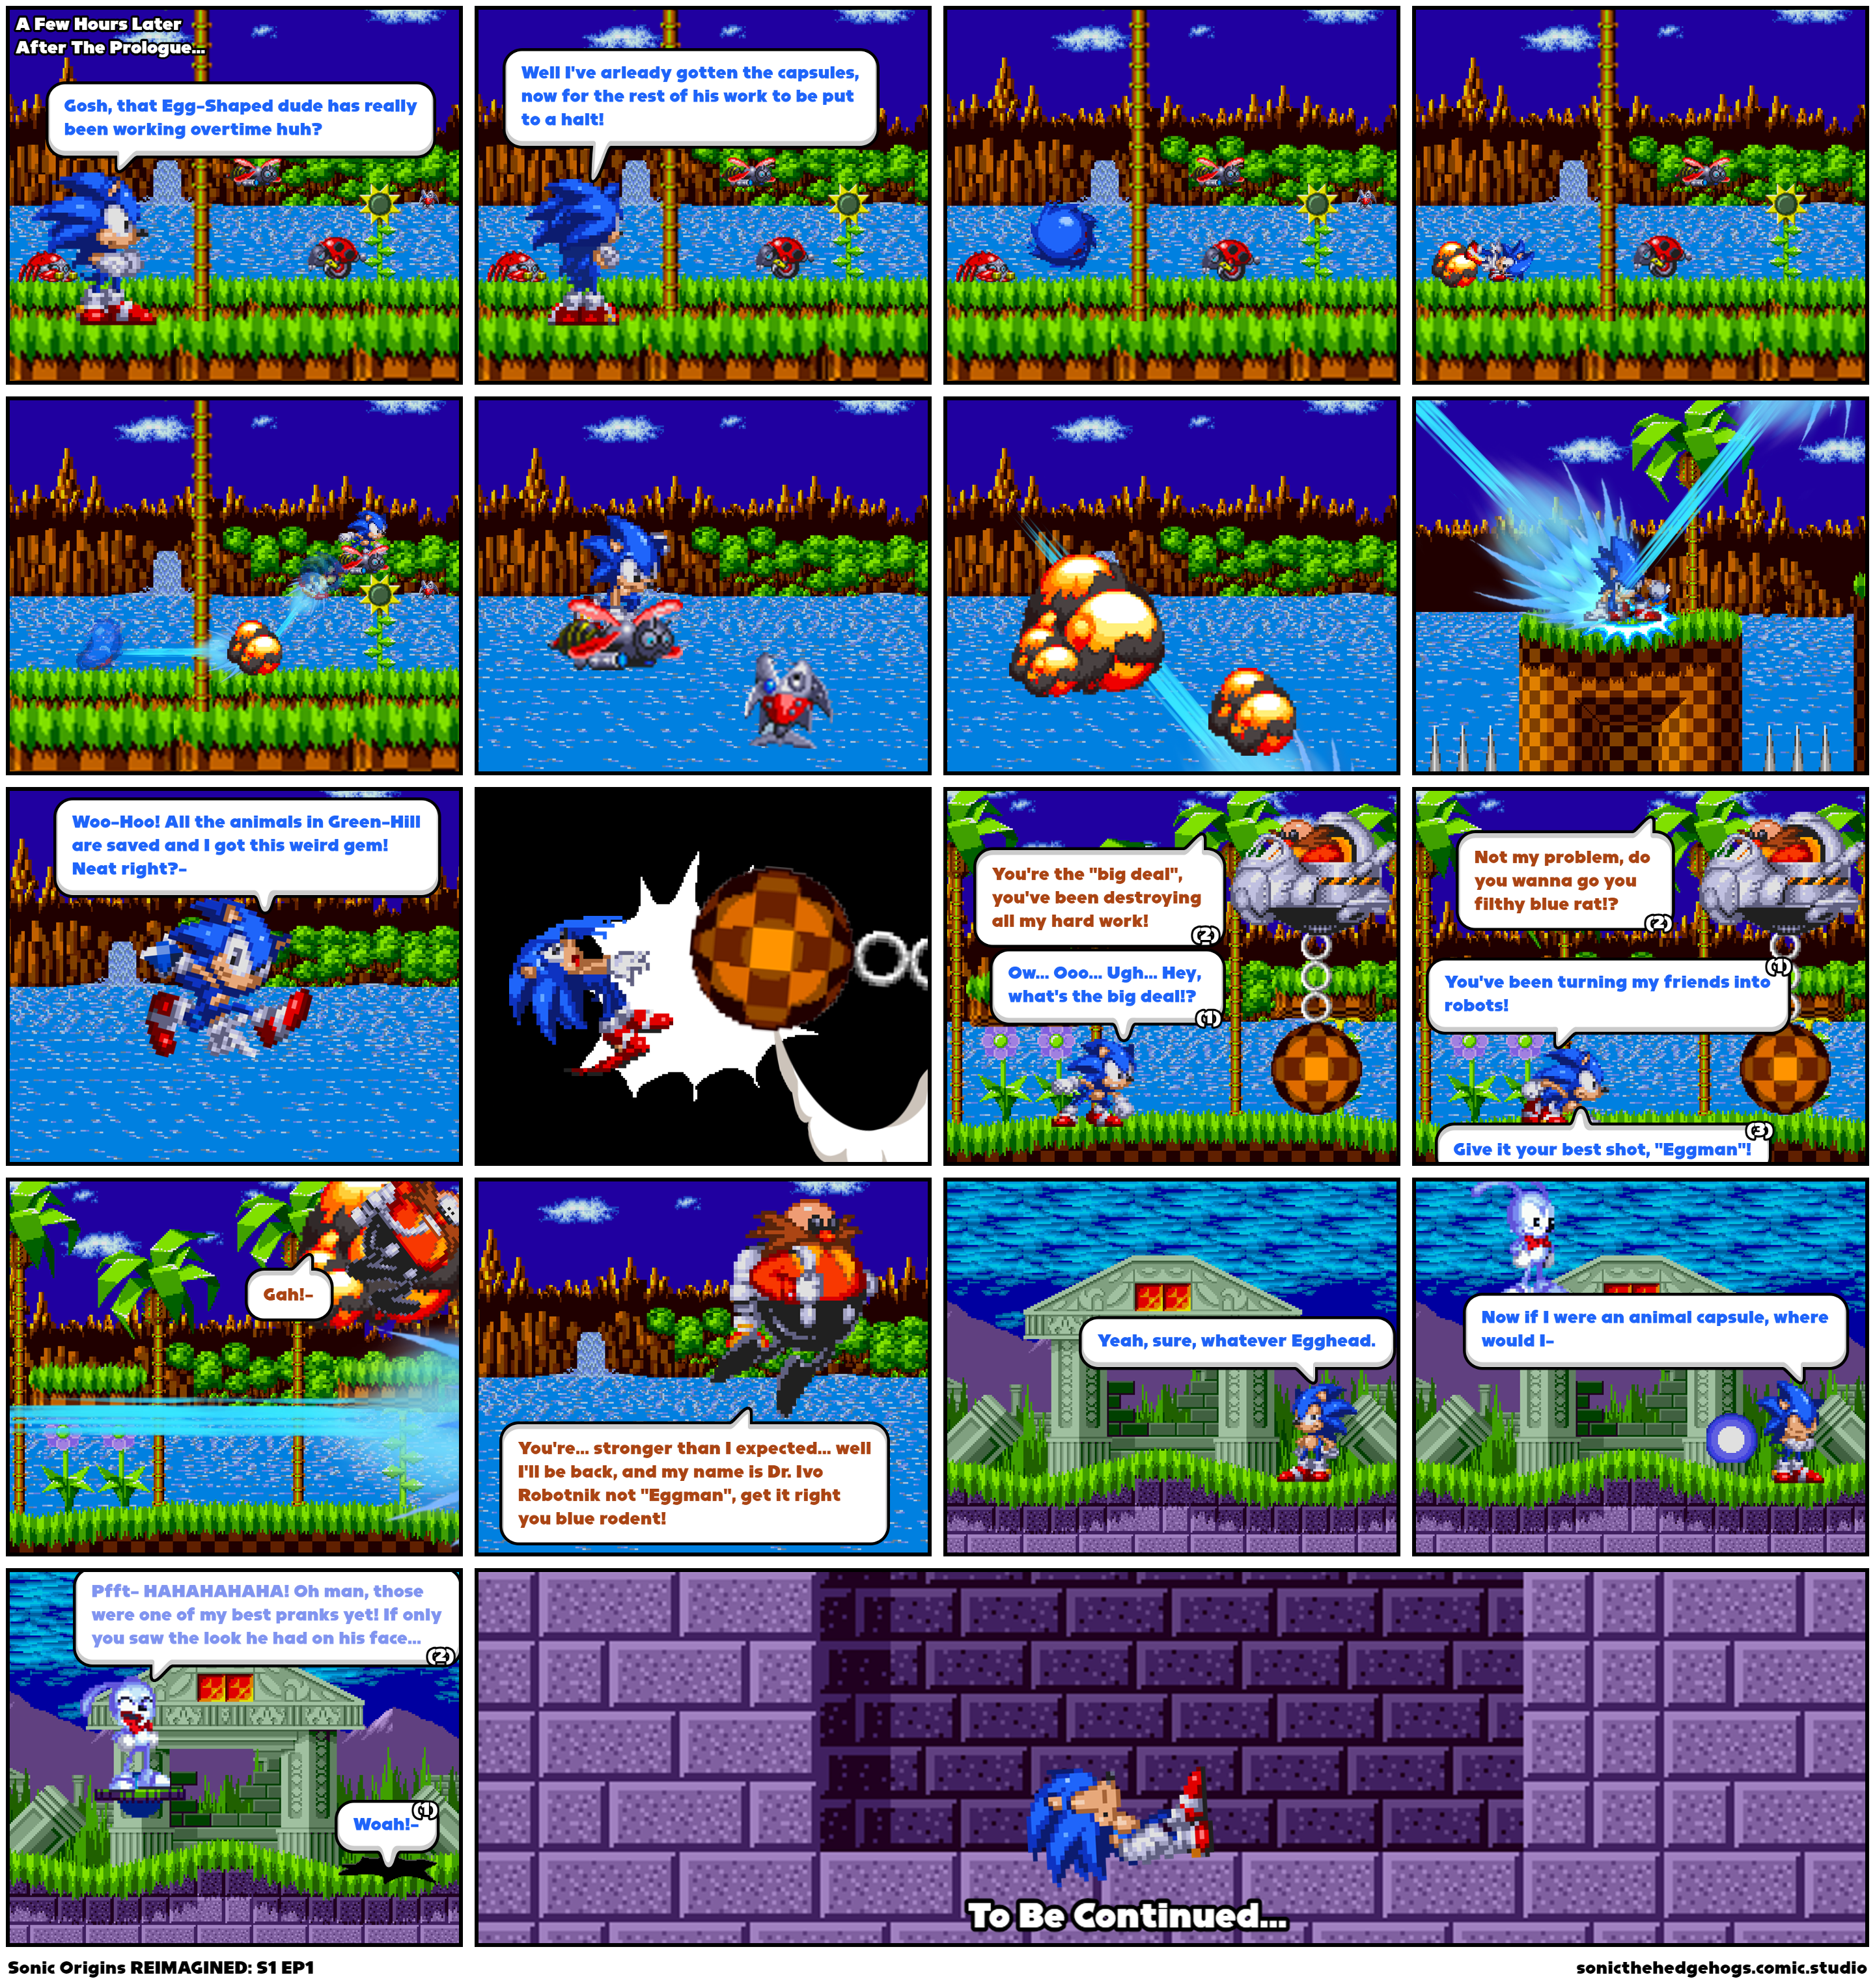 Sonic Origins REIMAGINED: S1 EP1